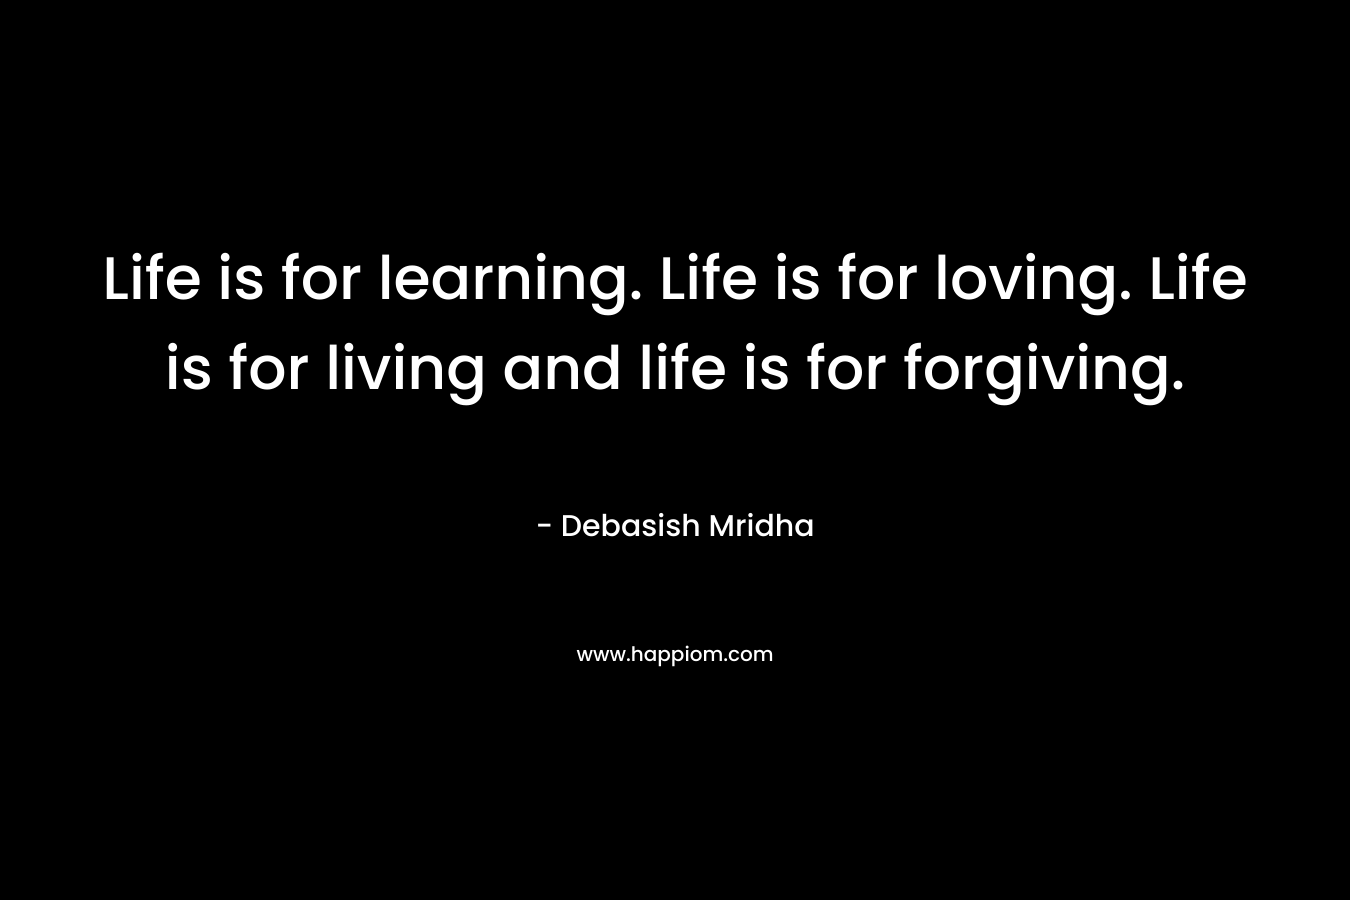 Life is for learning. Life is for loving. Life is for living and life is for forgiving.